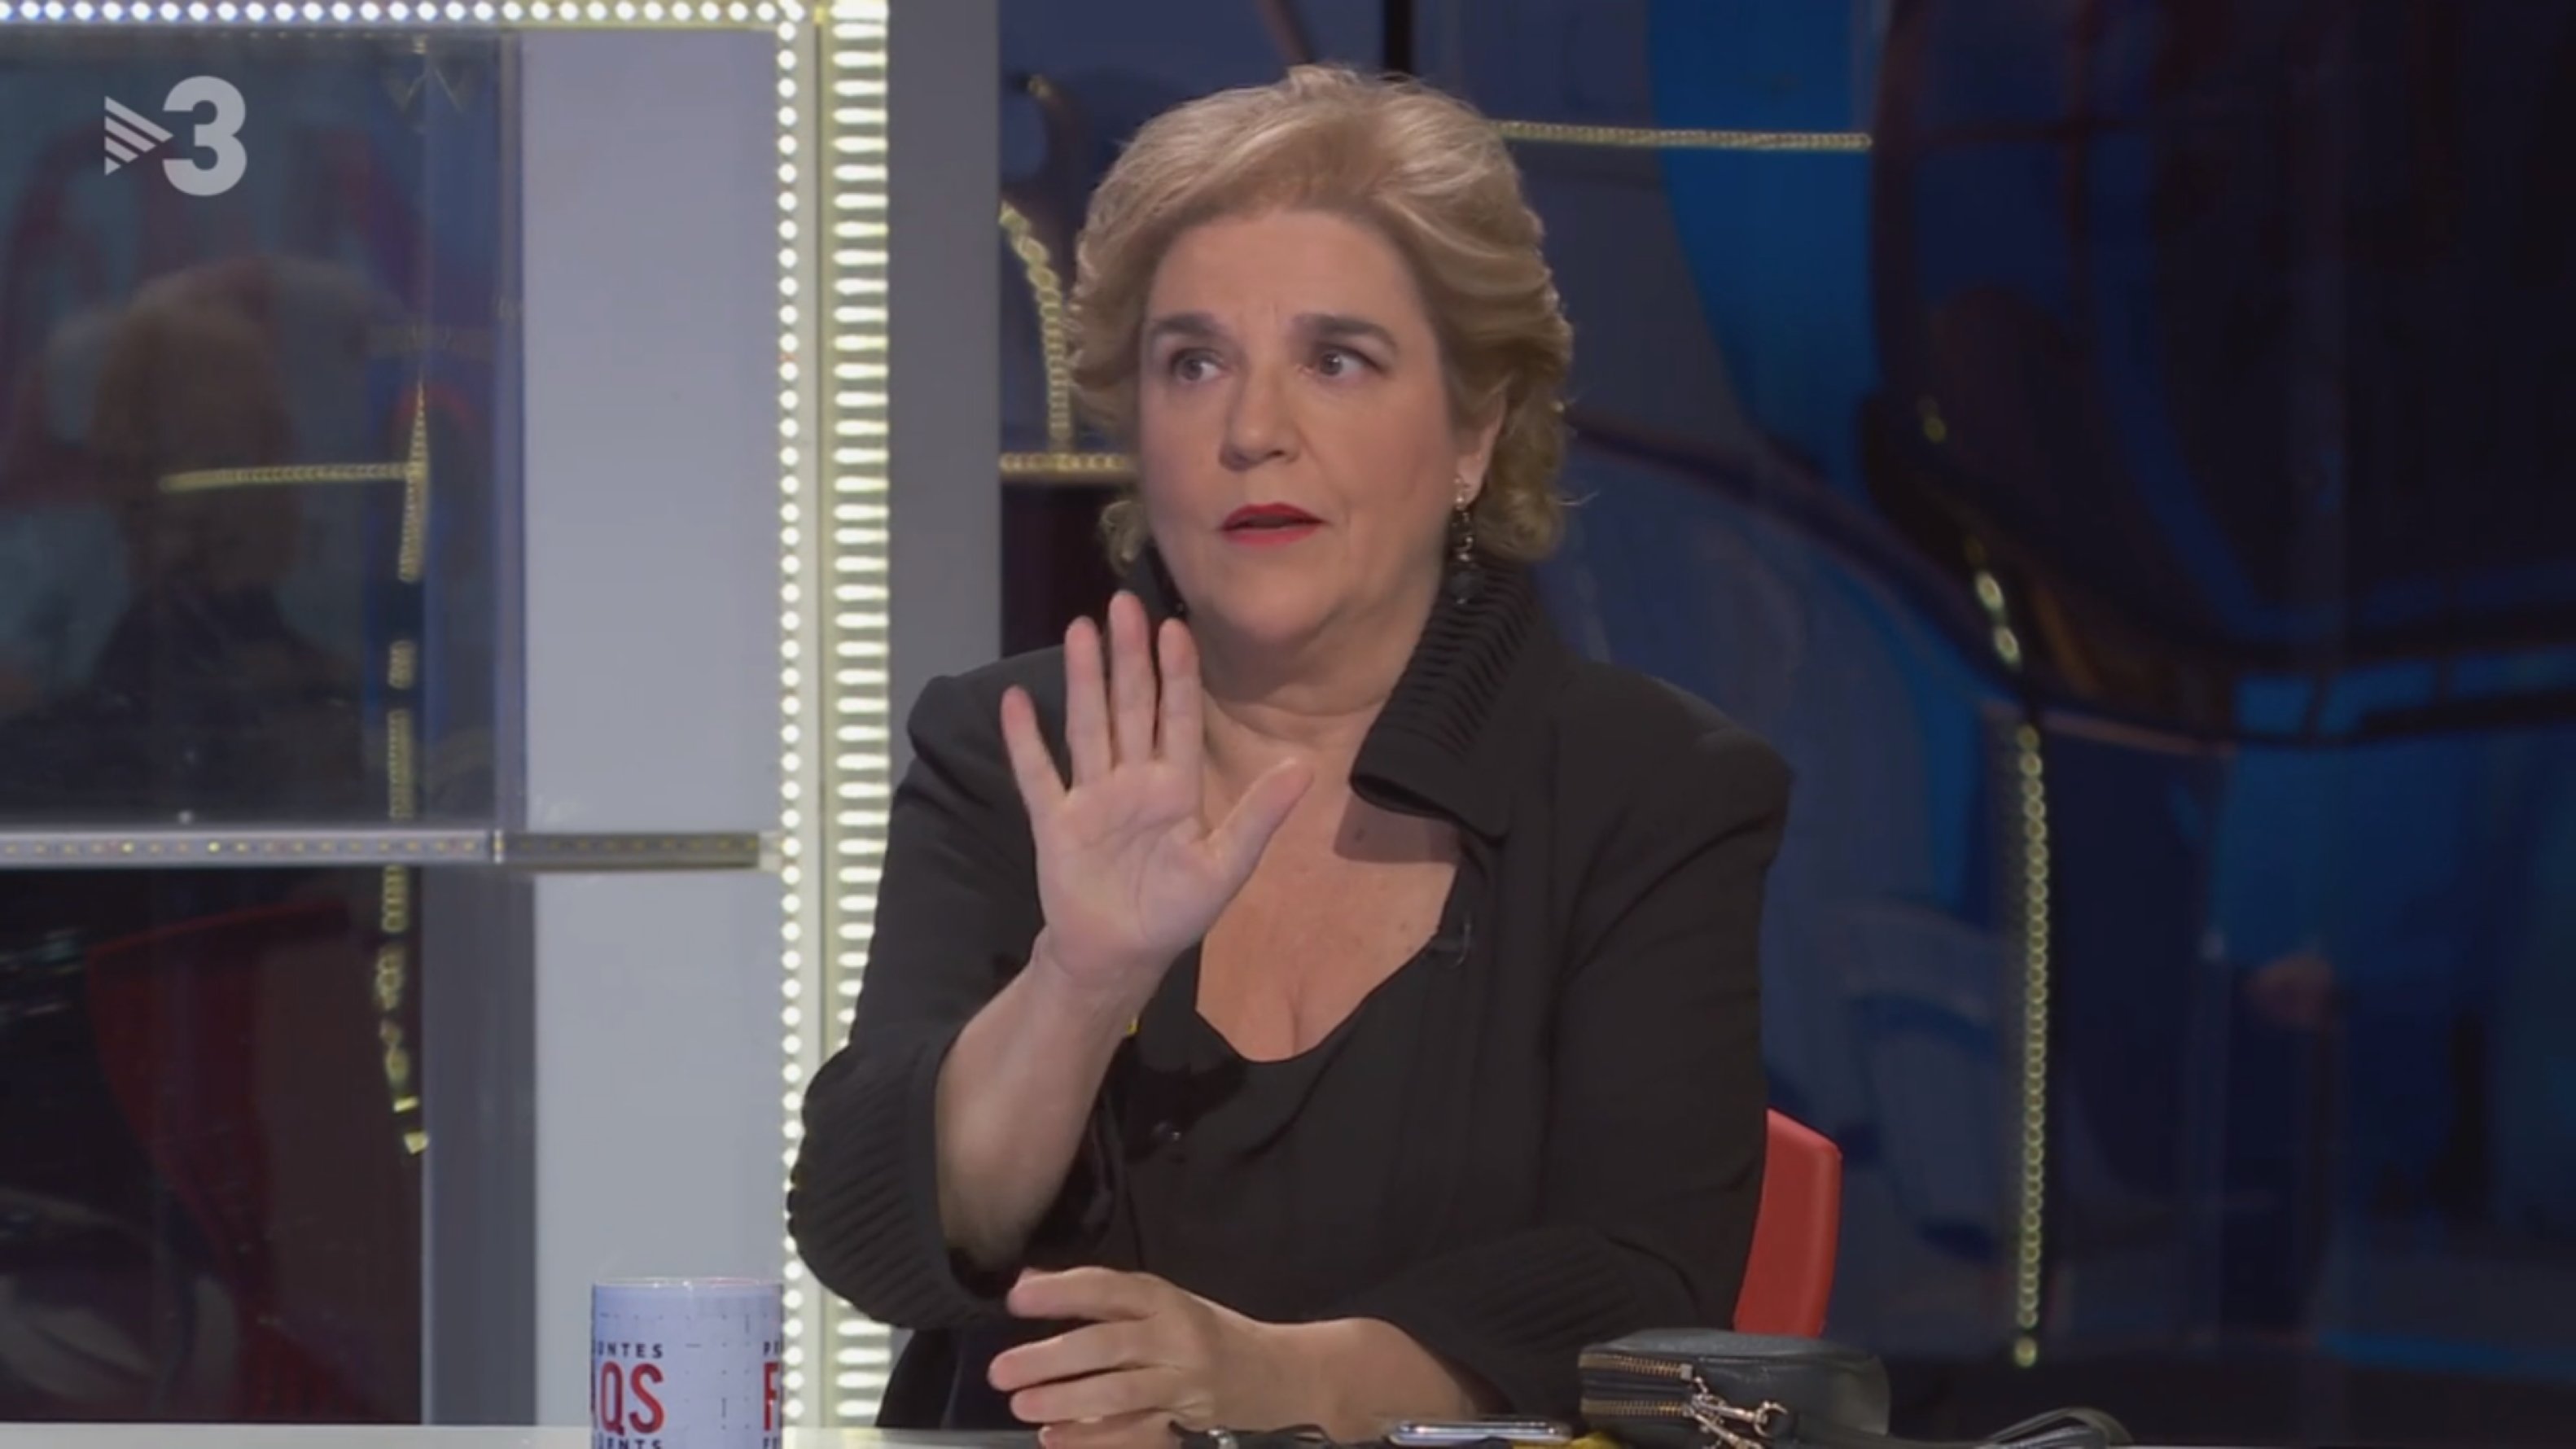 Rahola fulmina Anna Grau i el seu xou a TV3 des de Madrid:  "ara vens d'angelet"